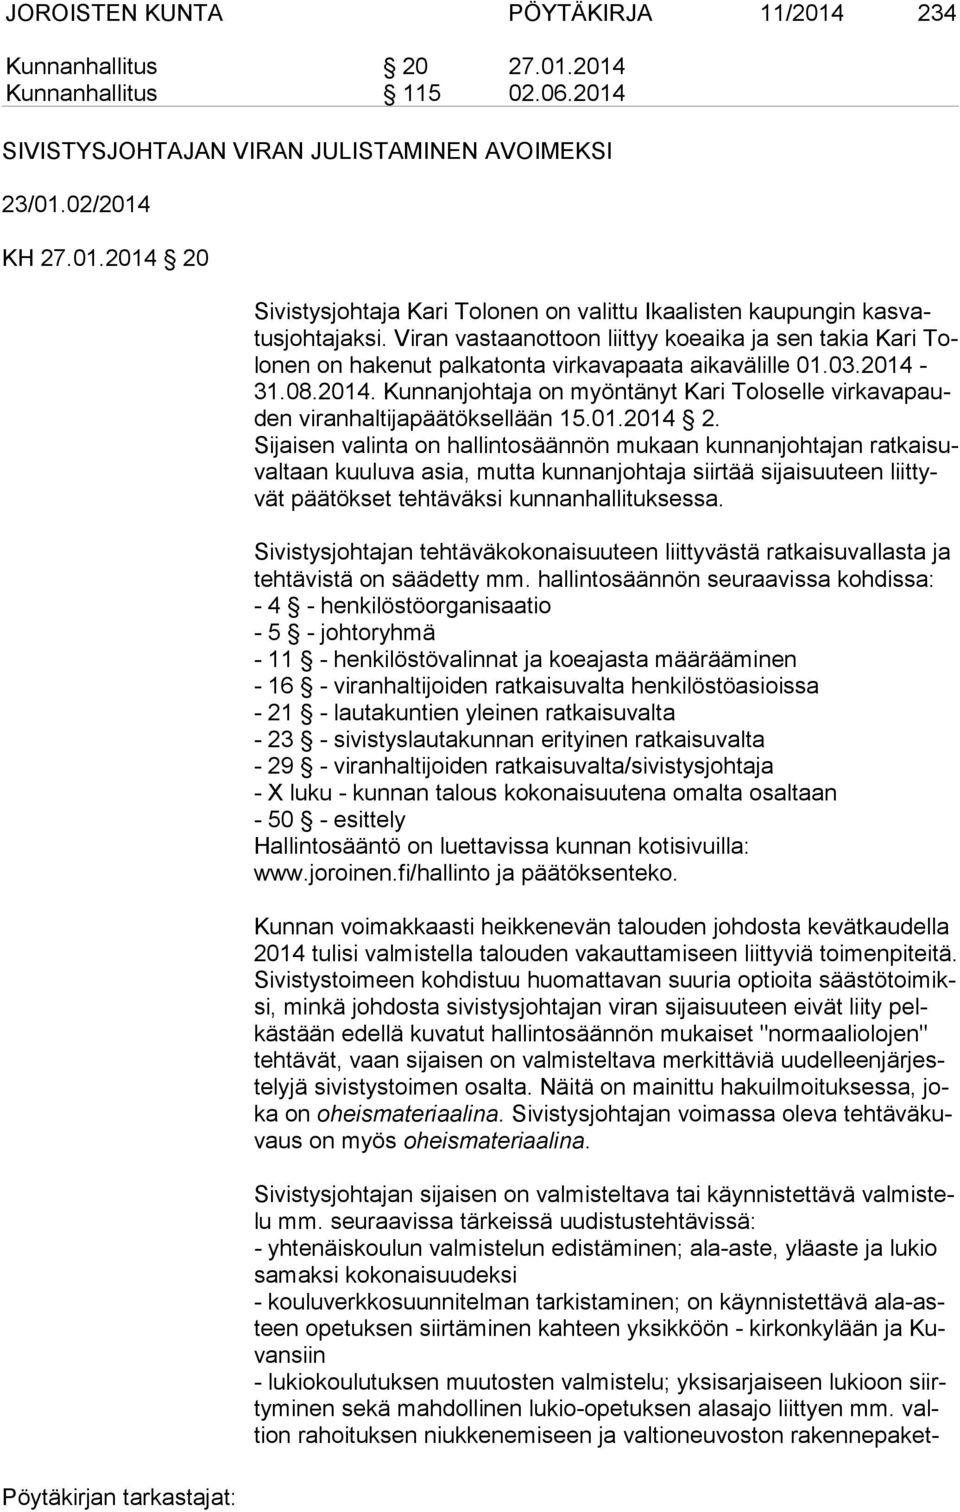 31.08.2014. Kunnanjohtaja on myöntänyt Kari Toloselle vir ka va pauden viranhaltijapäätöksellään 15.01.2014 2.